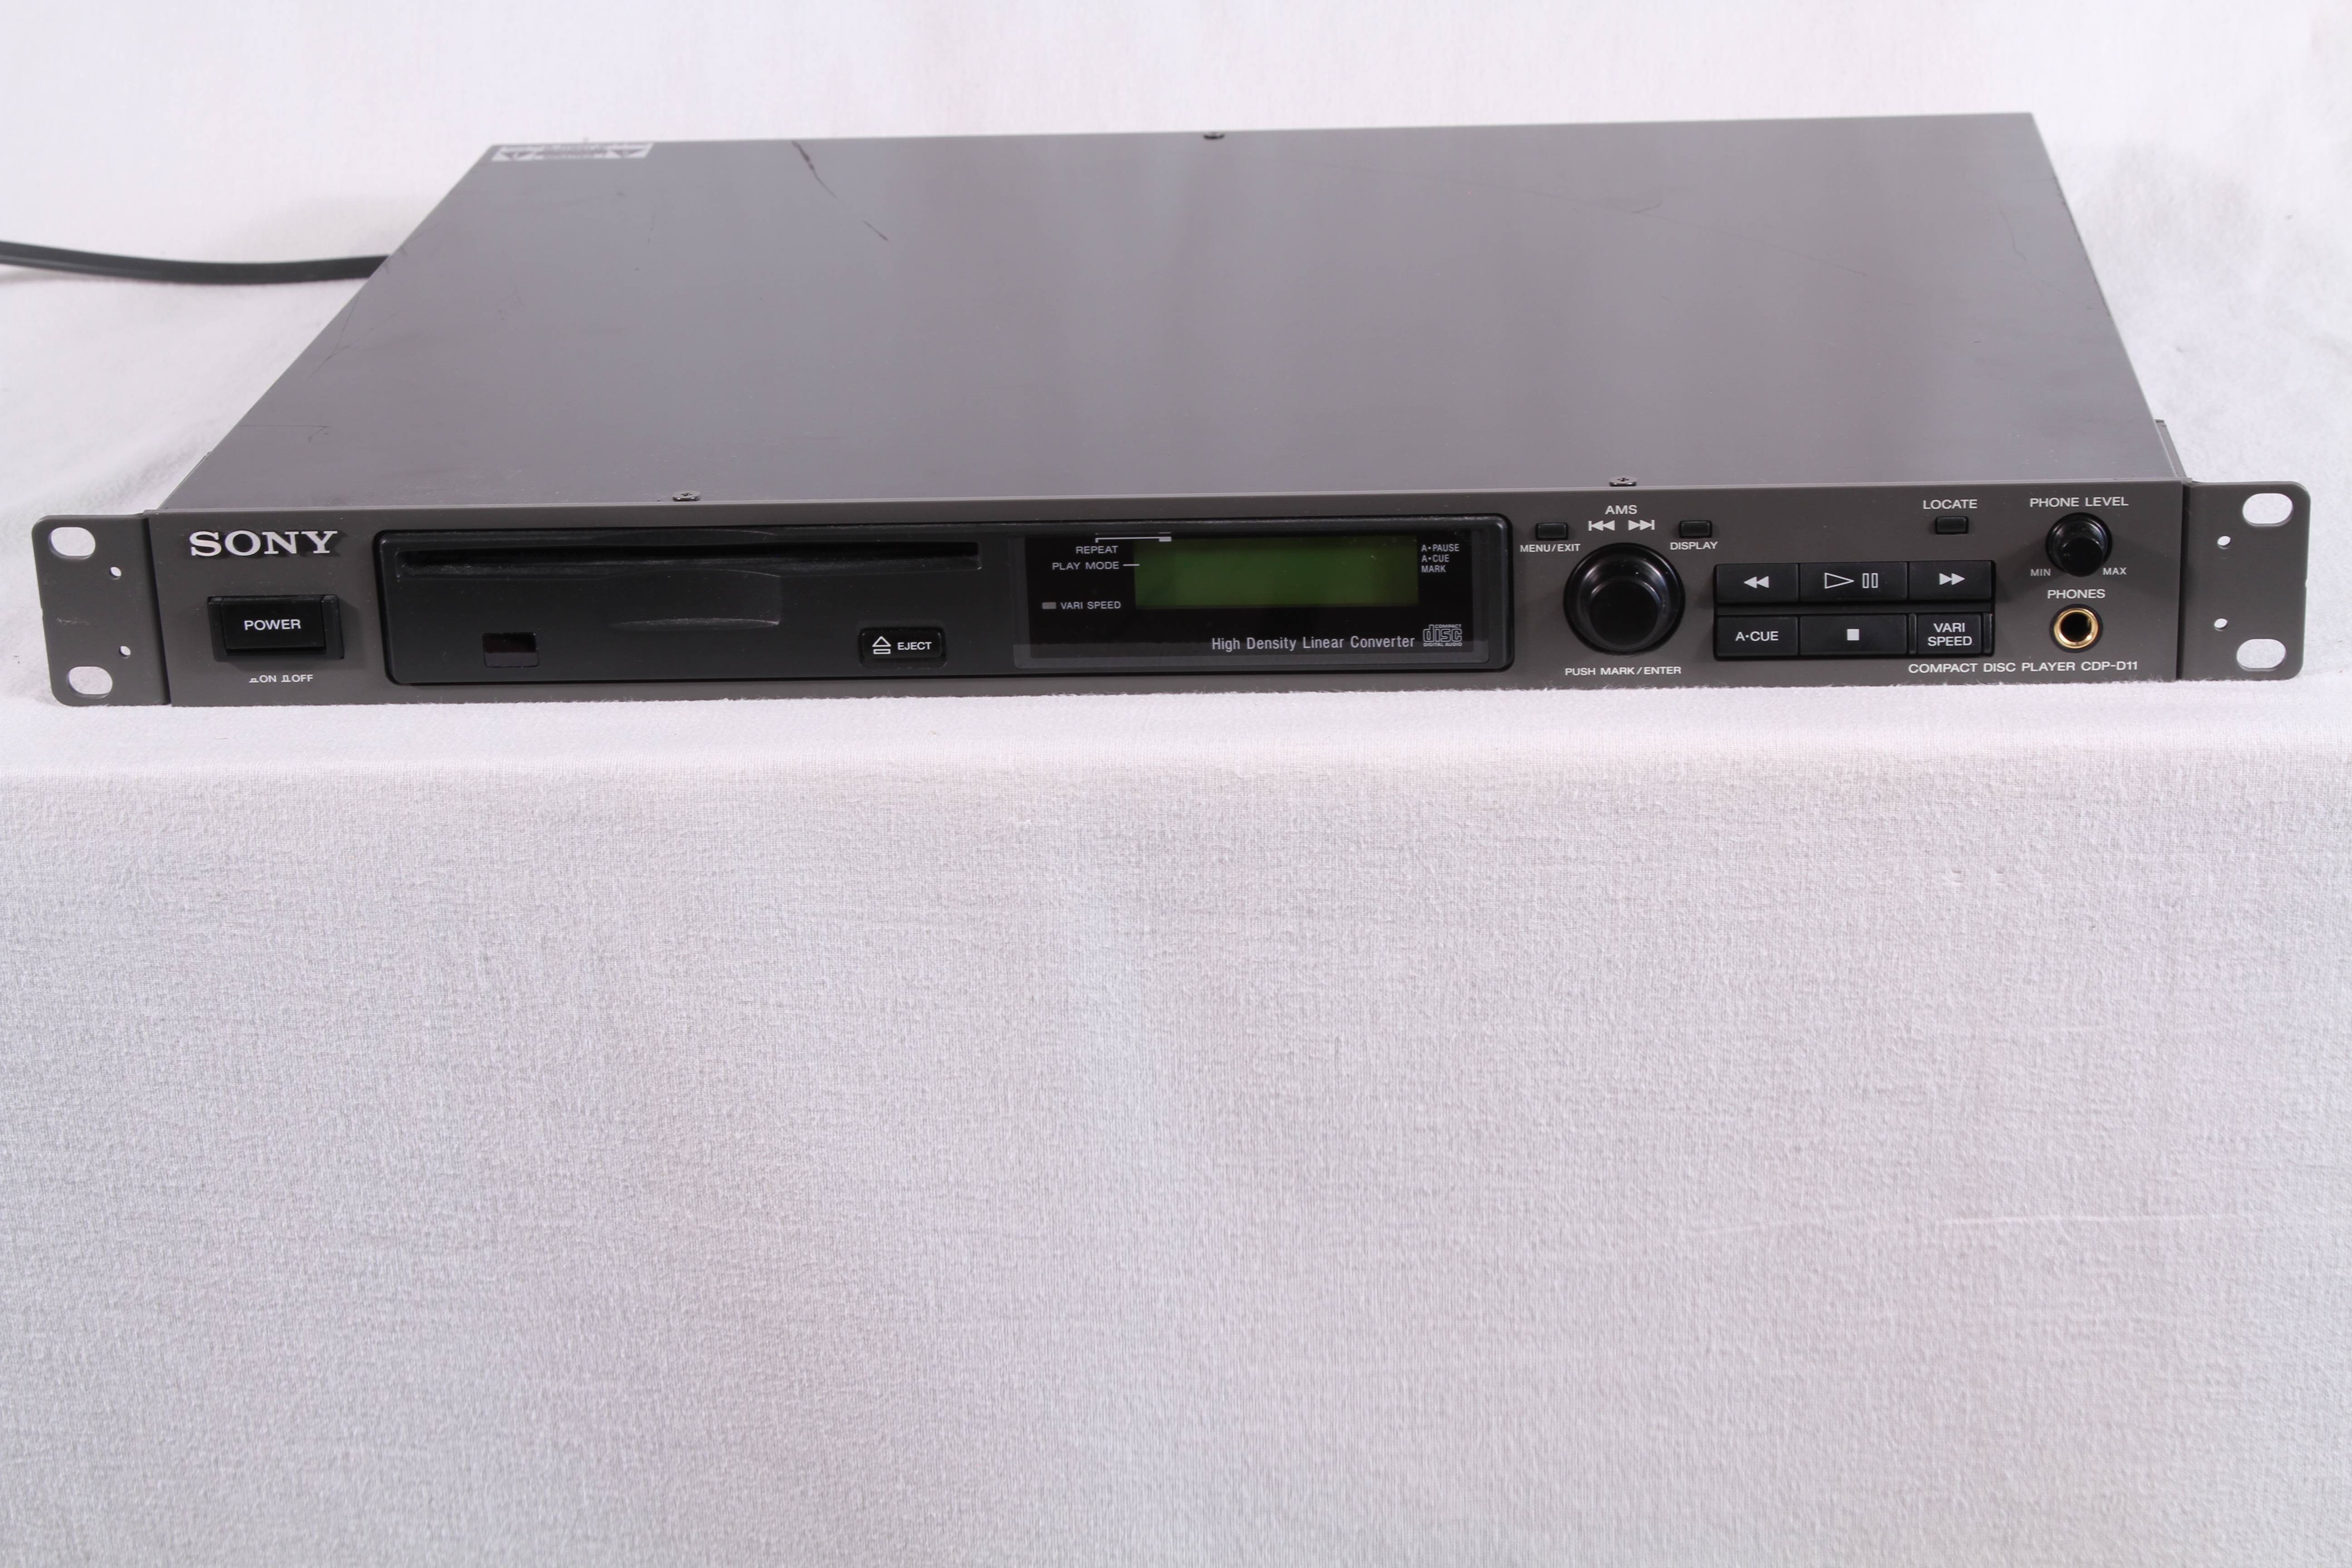 Sony CDP-D11